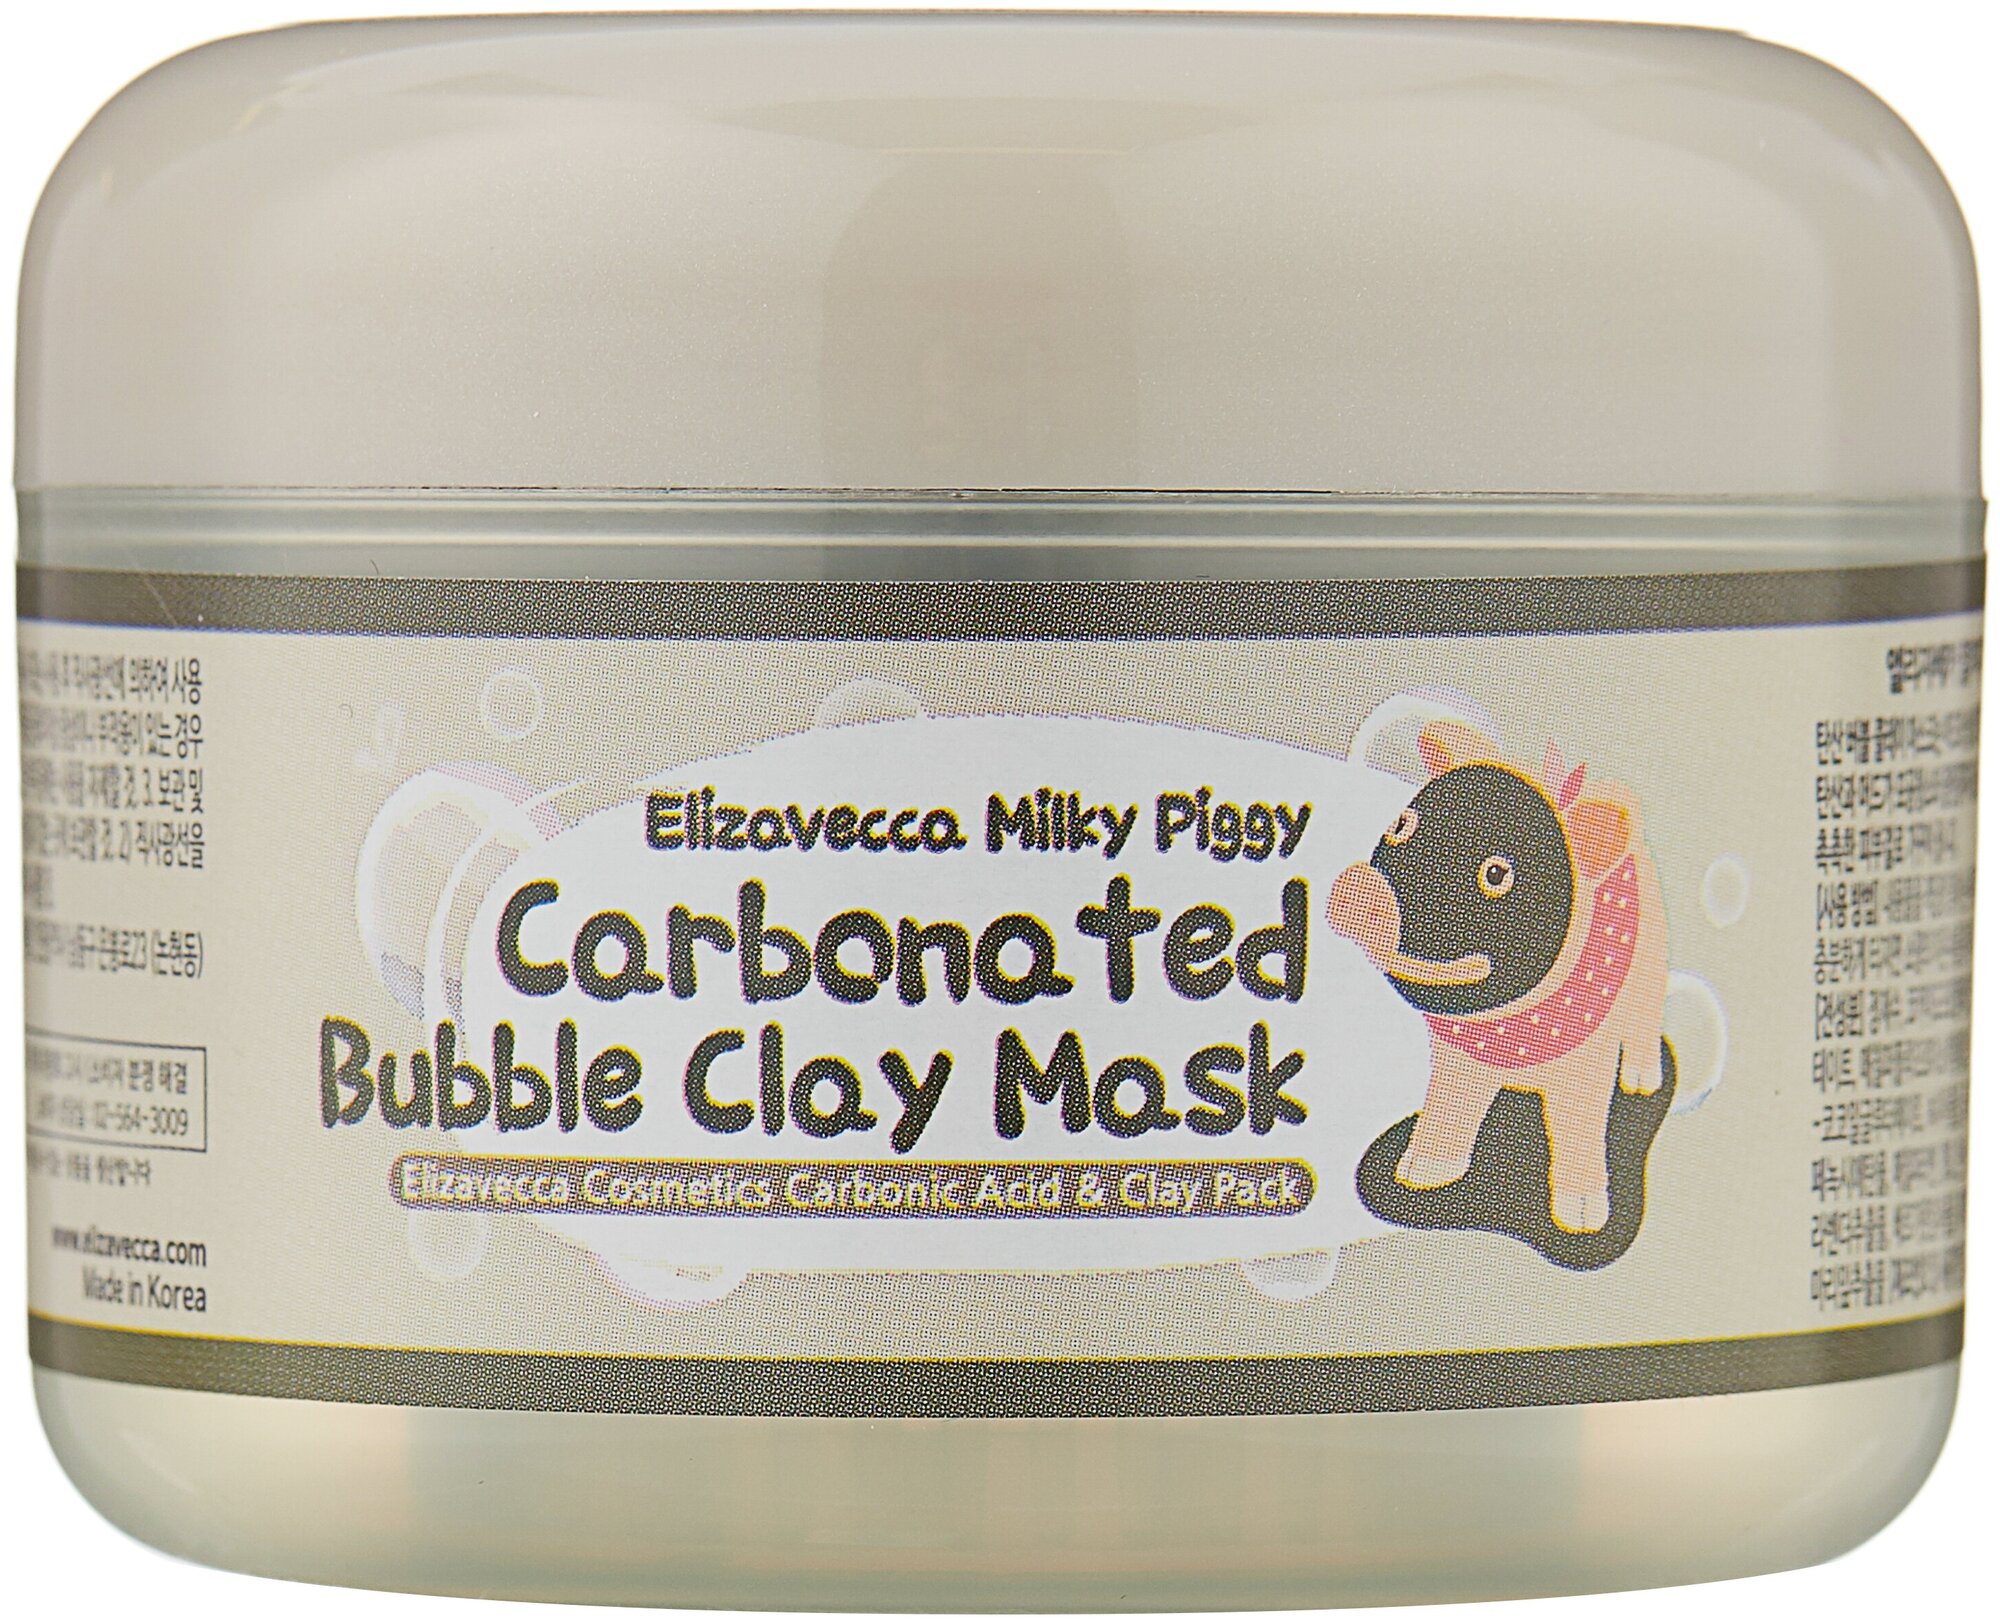    Elizavecca Milky Piggy Carbonated Bubble Clay Mask 100 .